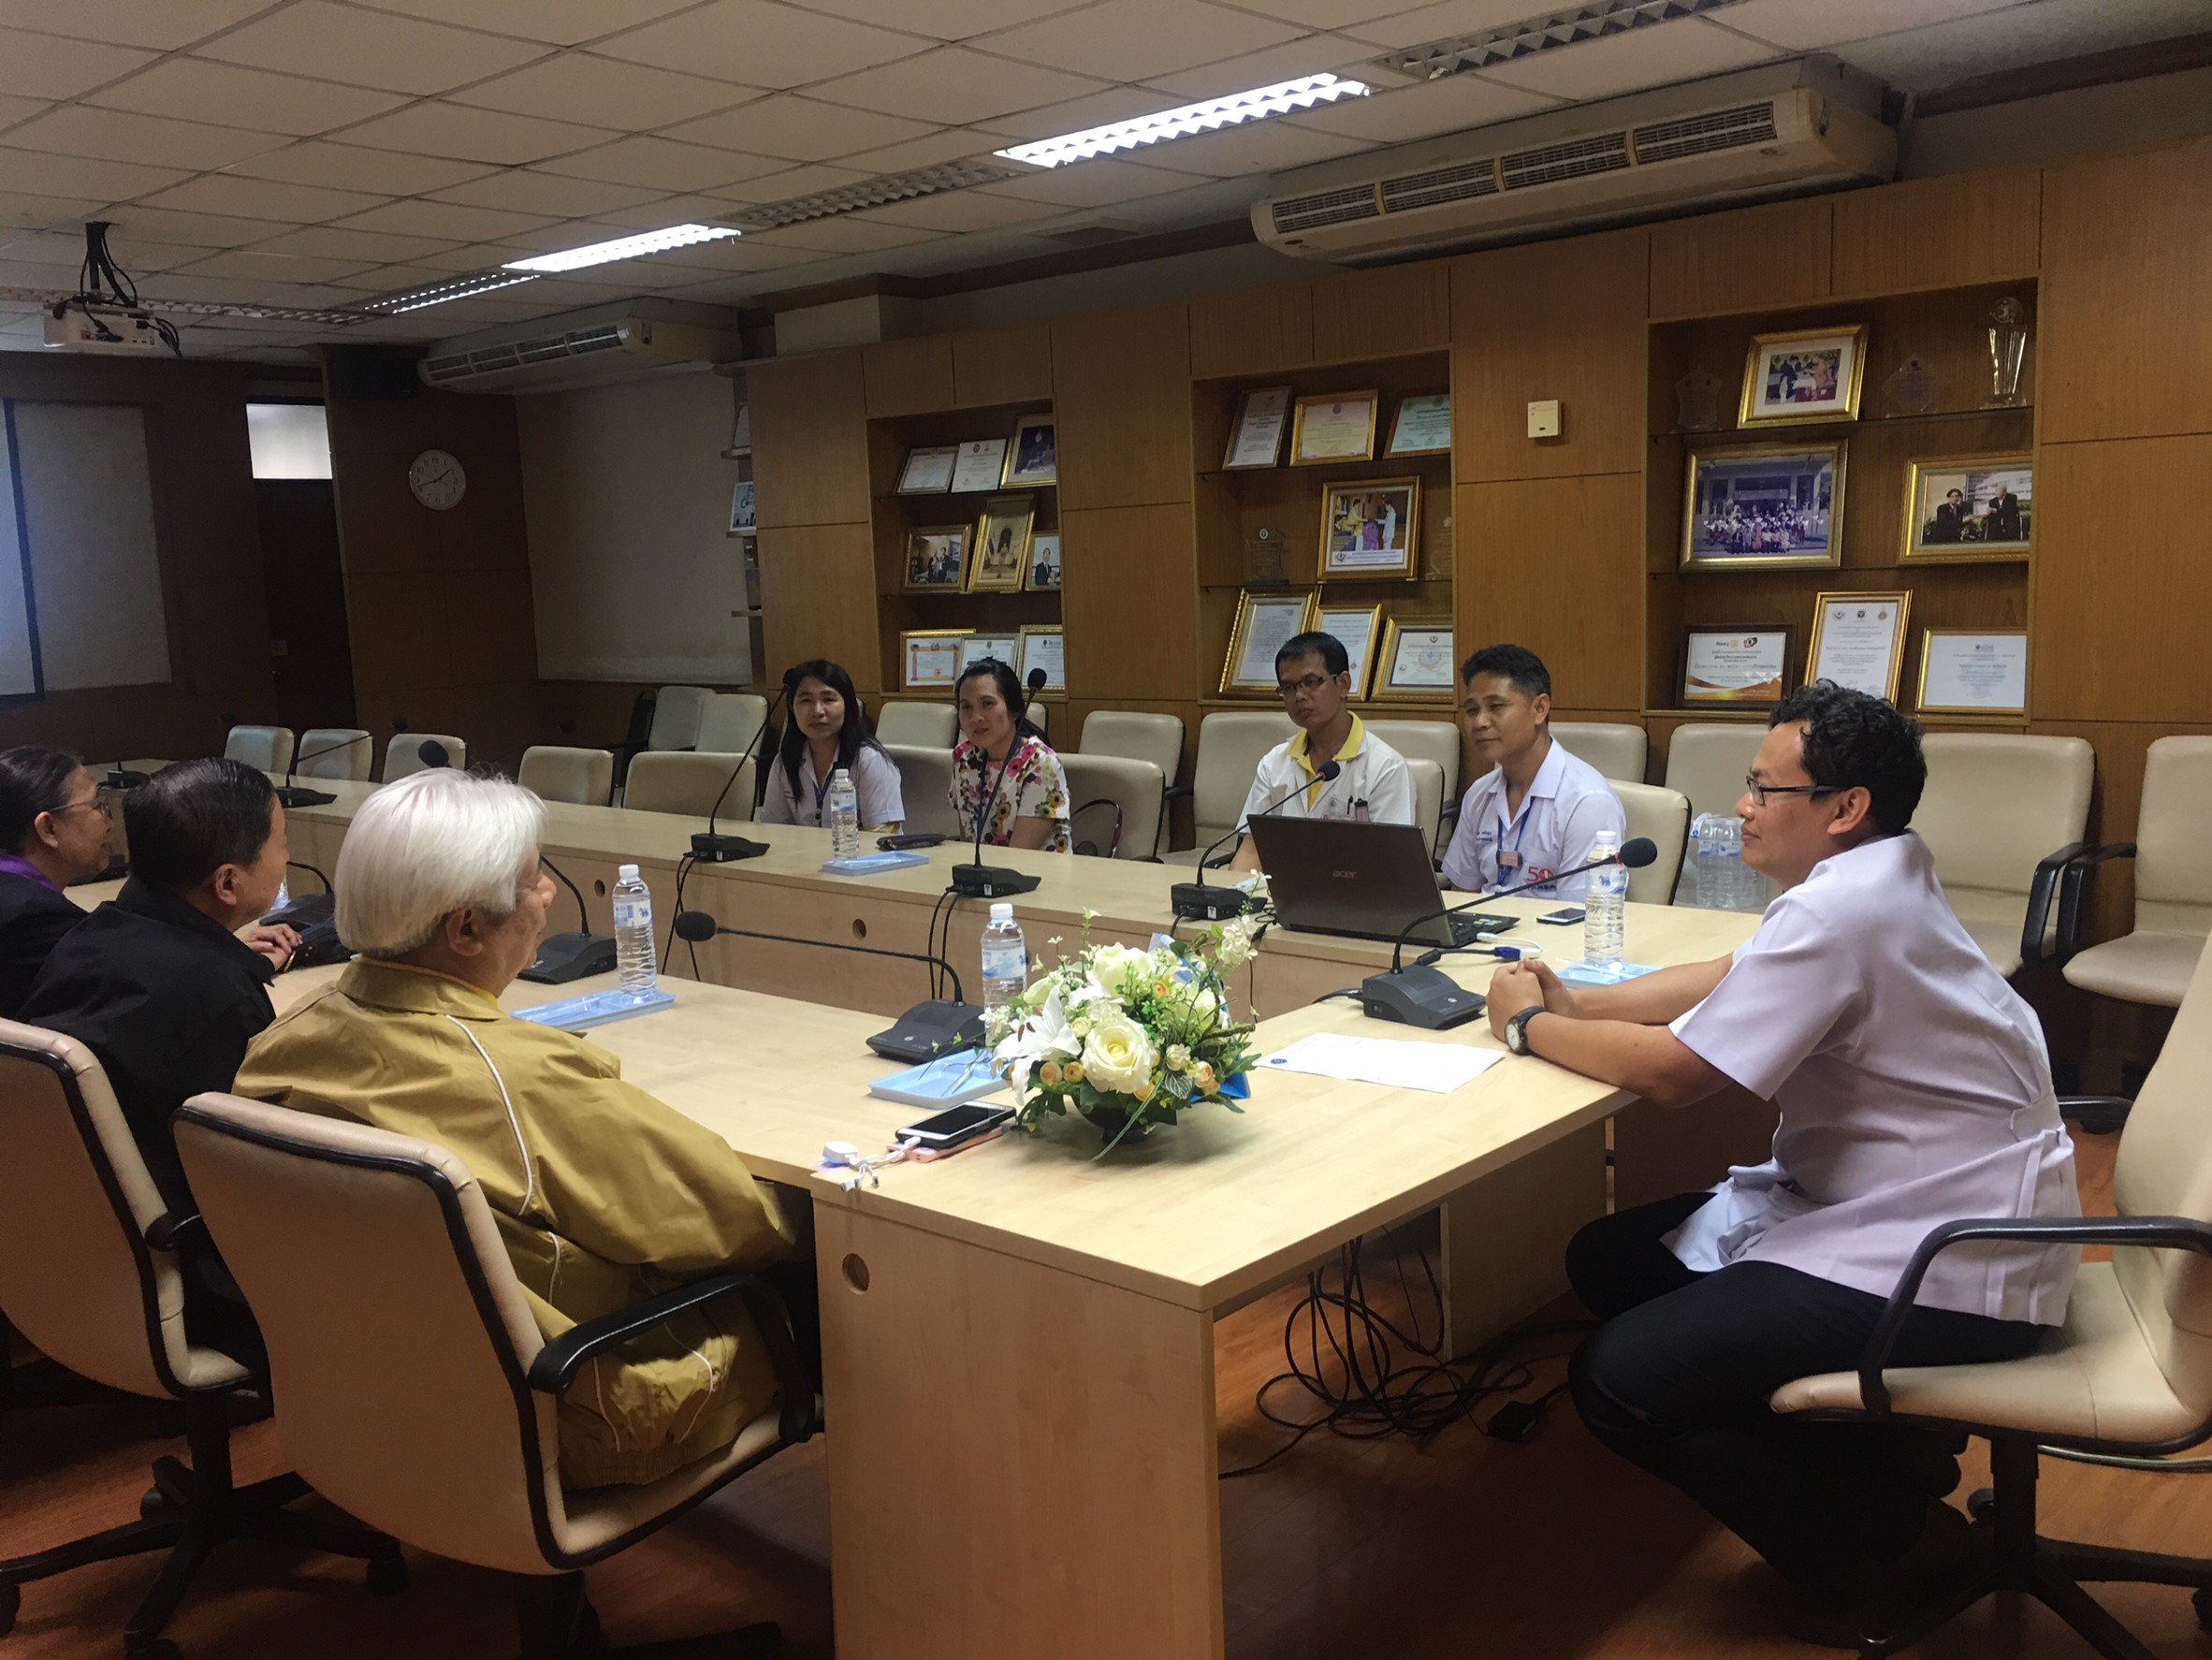 ประชุมวิชาการร่วมกับรังสีการแพทย์แห่งประเทศไทย ครั้งที่17 27-29 พ.ย. - พร้อมเข้าเยี่ยมและให้กำลังใจหน่วยงานรังสีวิทยาในพื้นที่จังหวัดอุบลราชธานีระหว่างวันที่ 25-26 พฤศจิกายน 2562 37